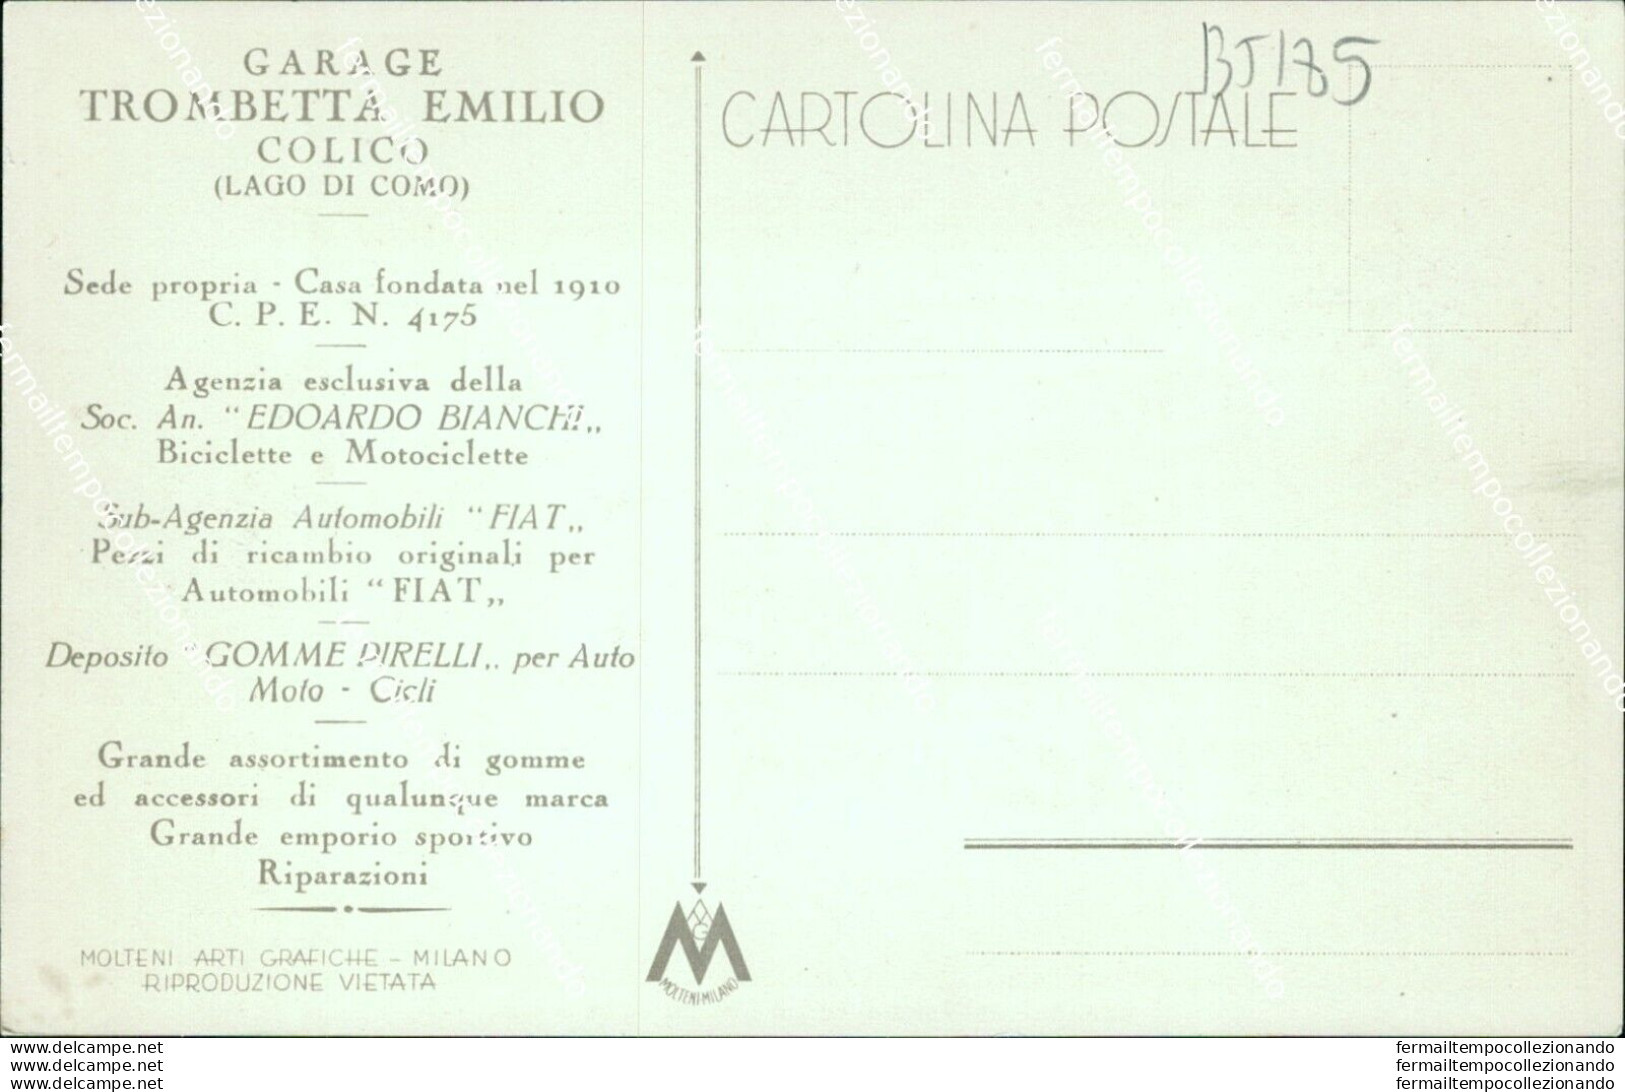 Bt185 Cartolina Colico Garage Trombetta Emilio Provincia Di Como Lombardia - Como